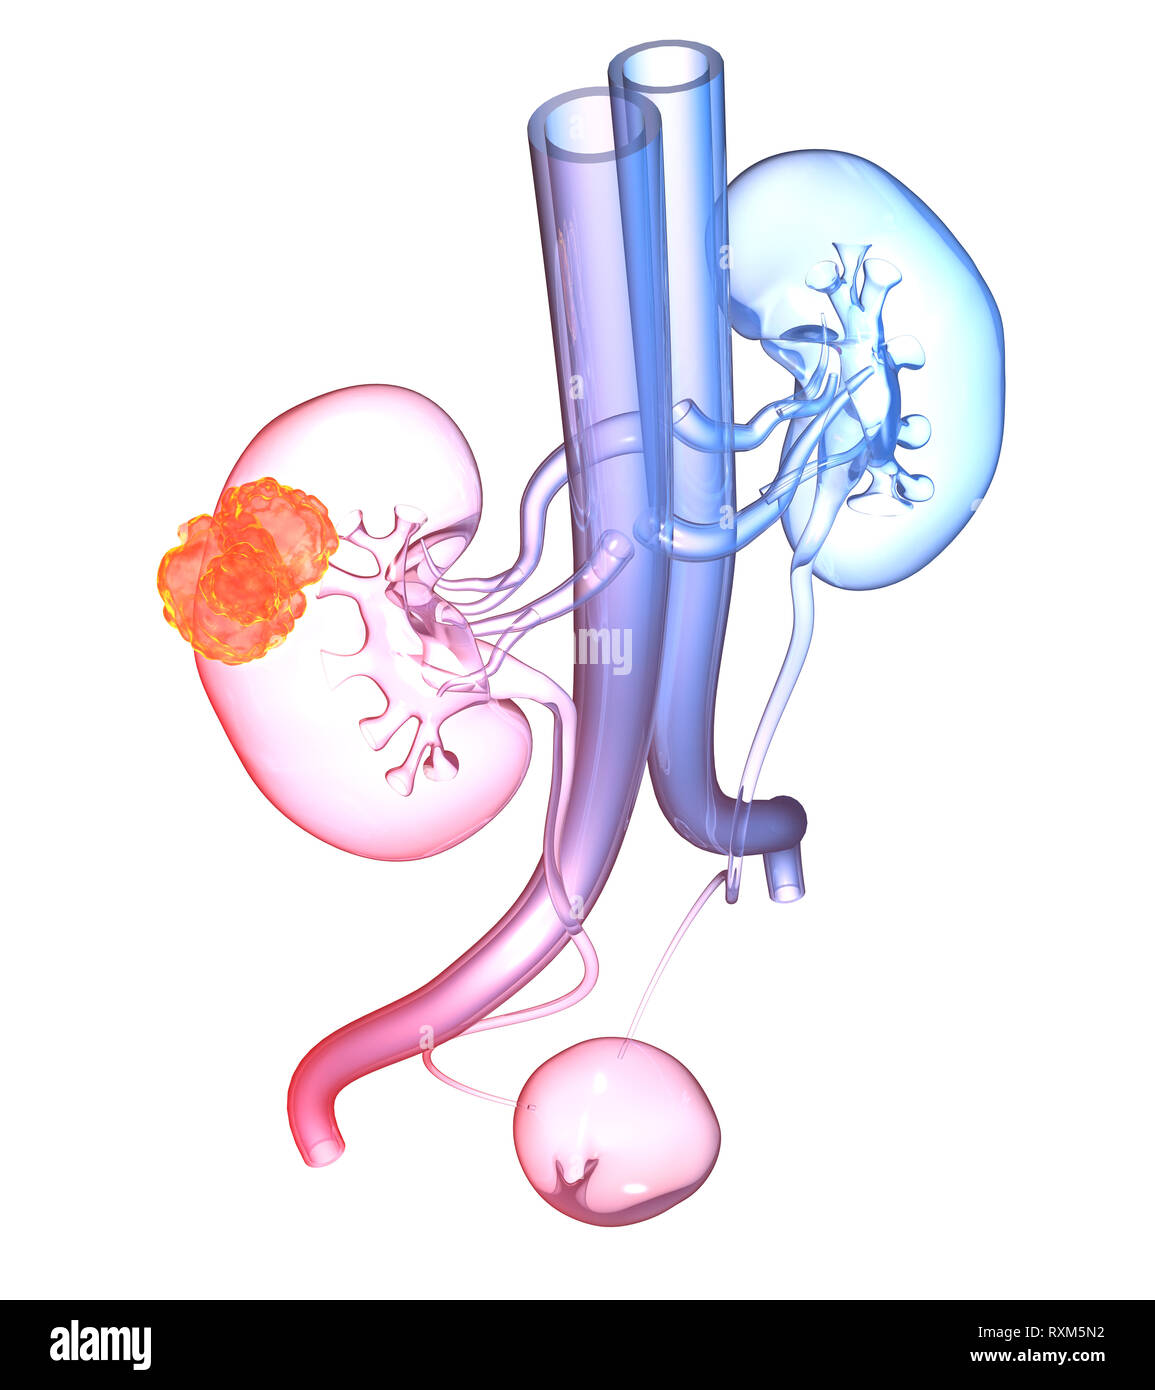 Harnwege einer Frau mit Nieren, Nebennieren, Arterien, Venen, Harnleiter und Harnblase, Stockfoto